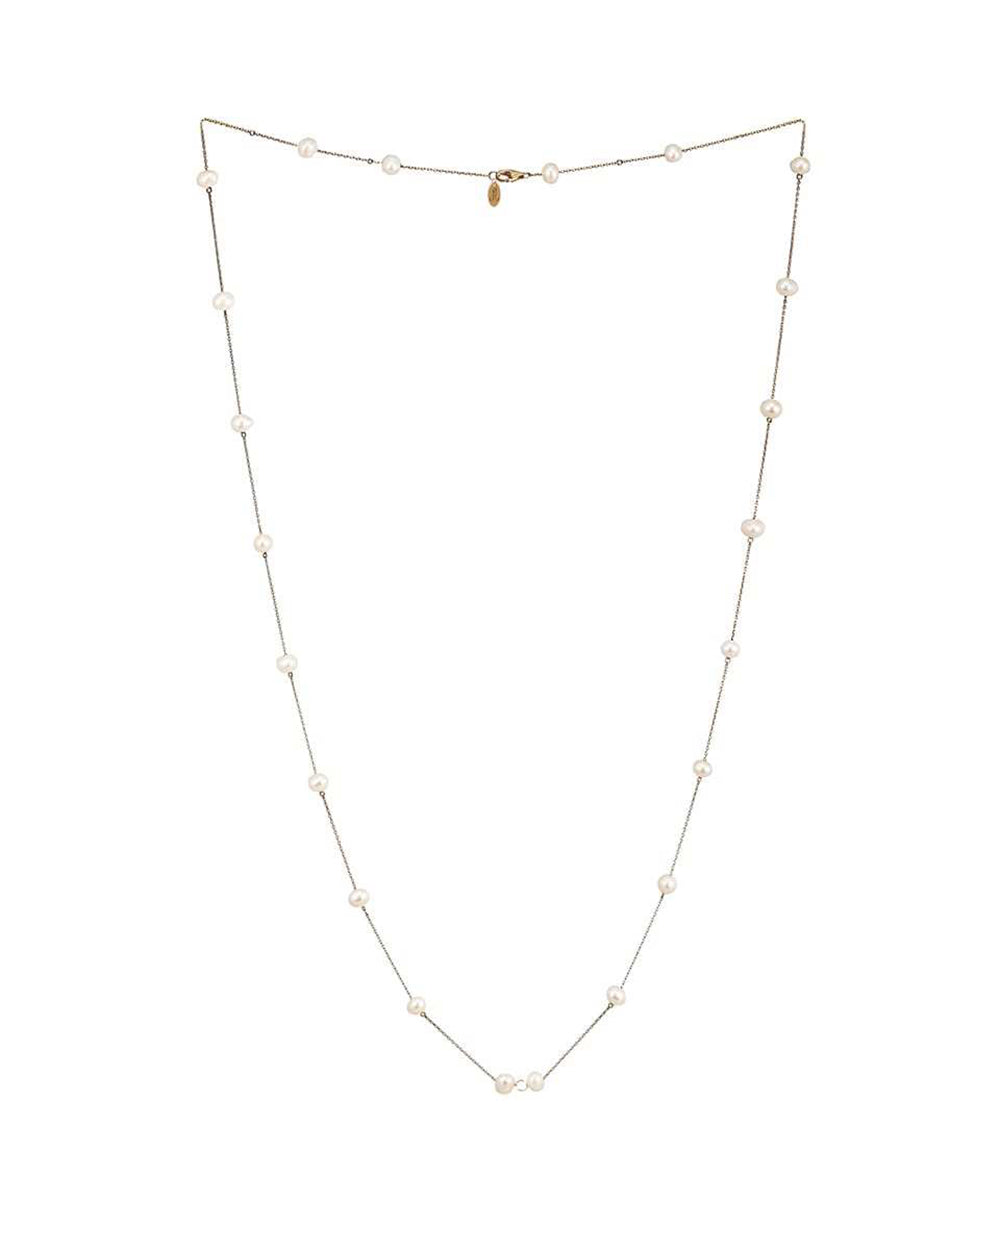 SM05 Lane long white pearl necklace